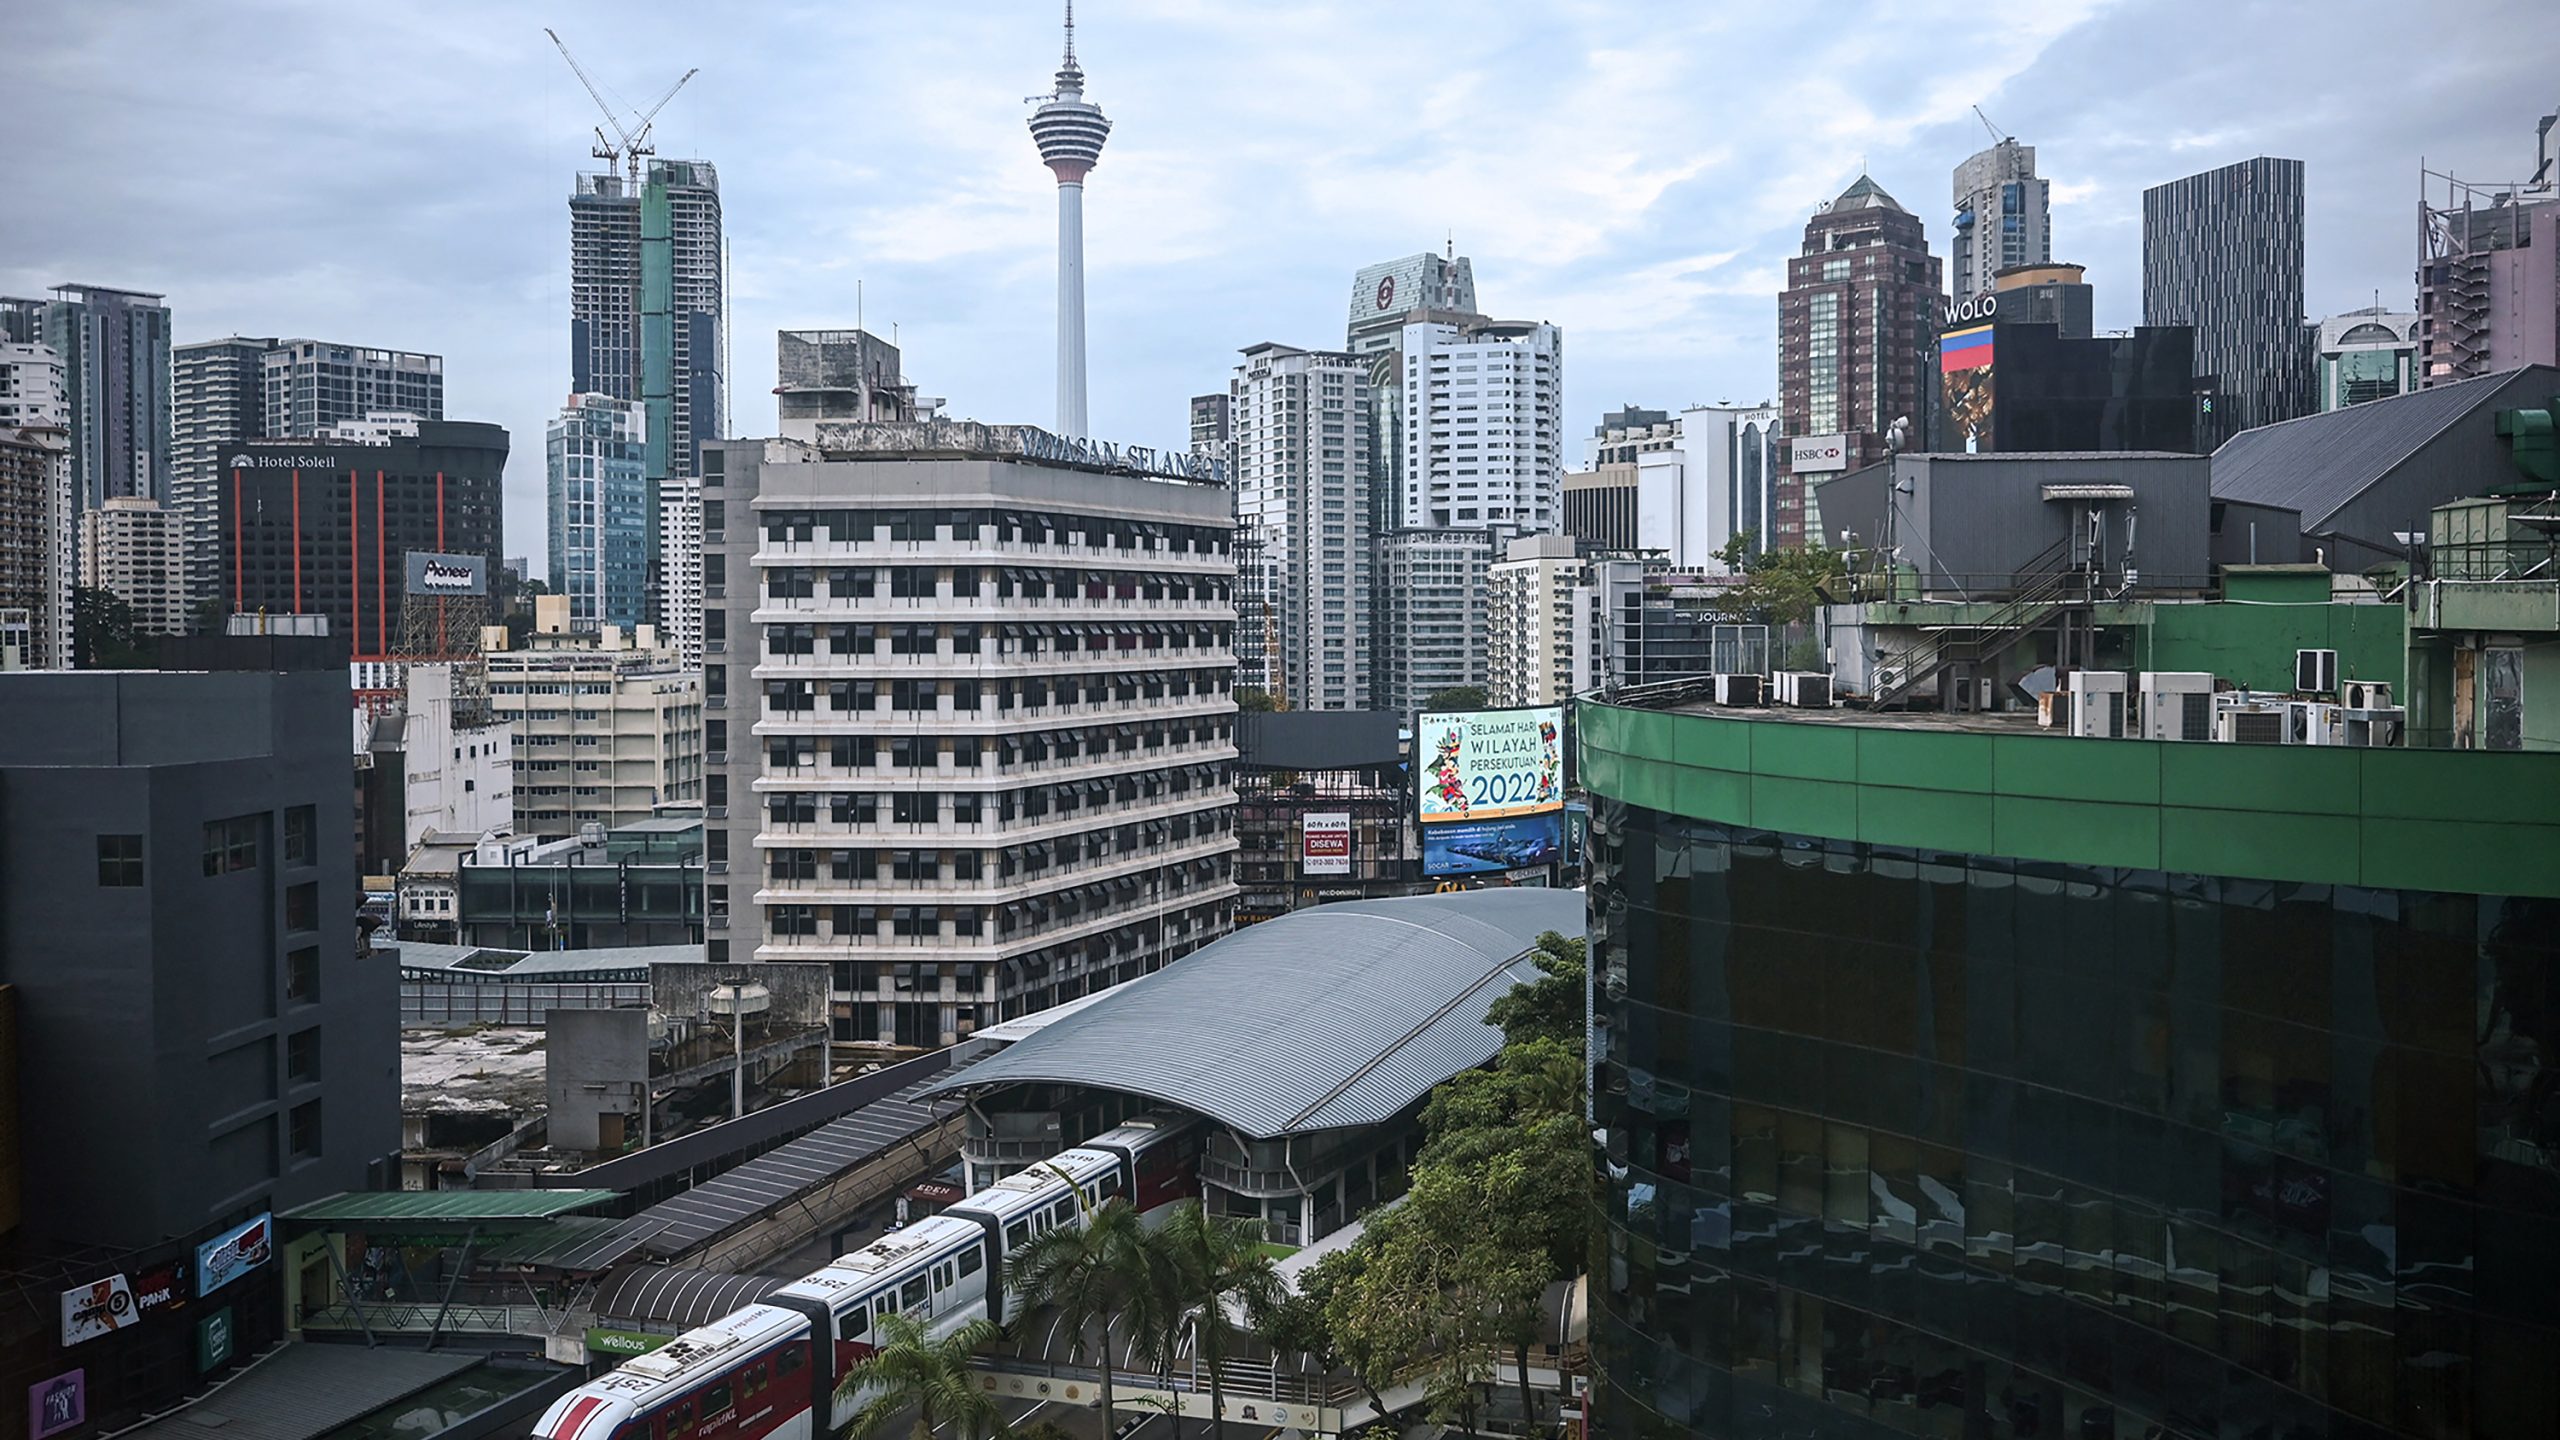 马来西亚在吸引外国直接投资方面领先新兴东南亚